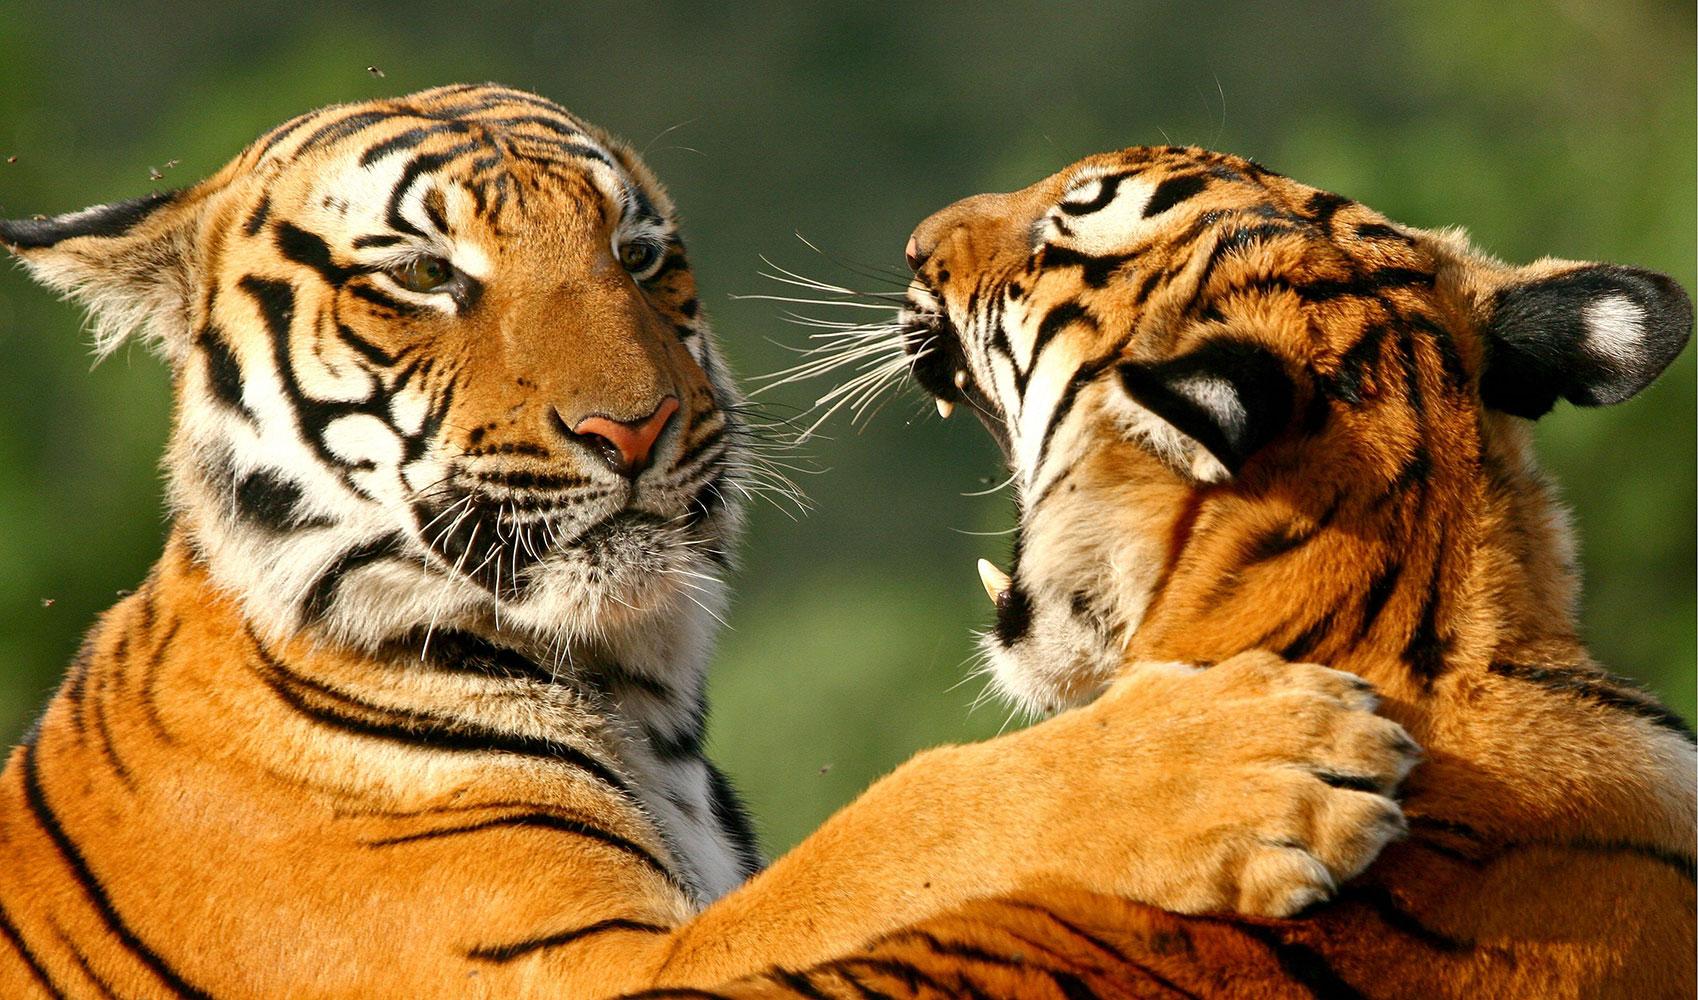 Sydkinesiska tigerungar.